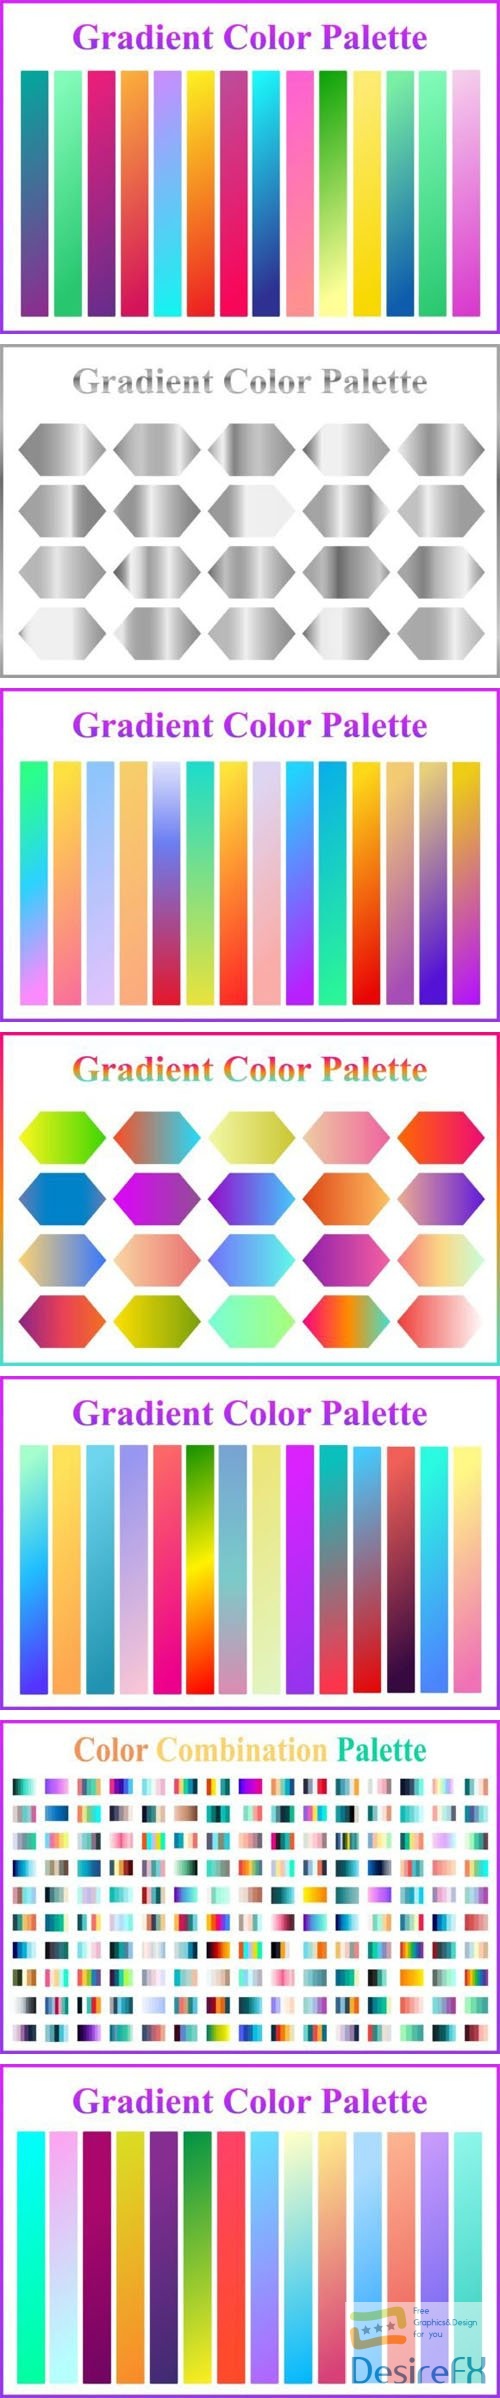 7 Gradient Color Palettes Vector Sets